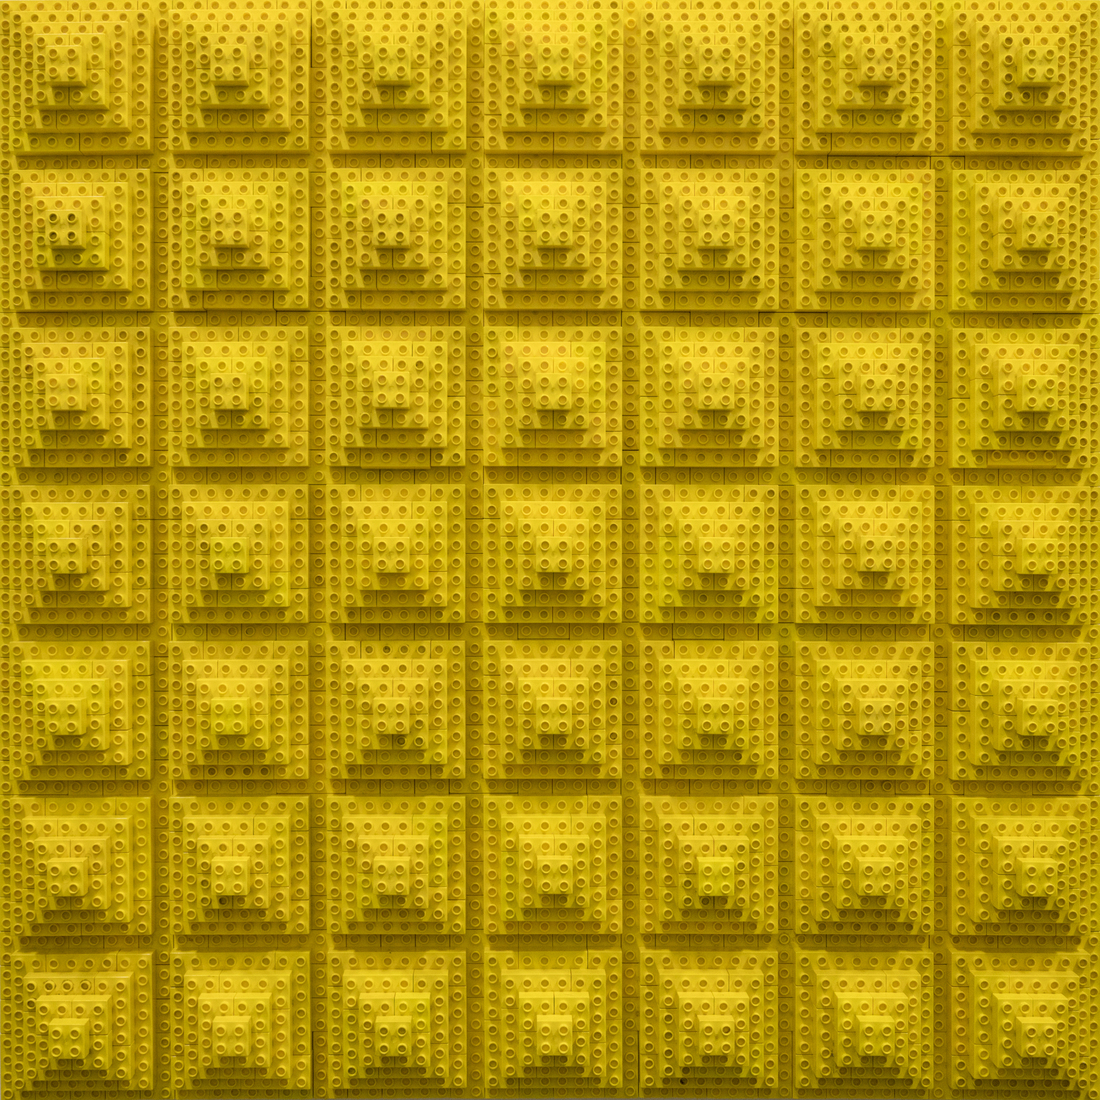 Negenenveertig gele duplo lego piramiden